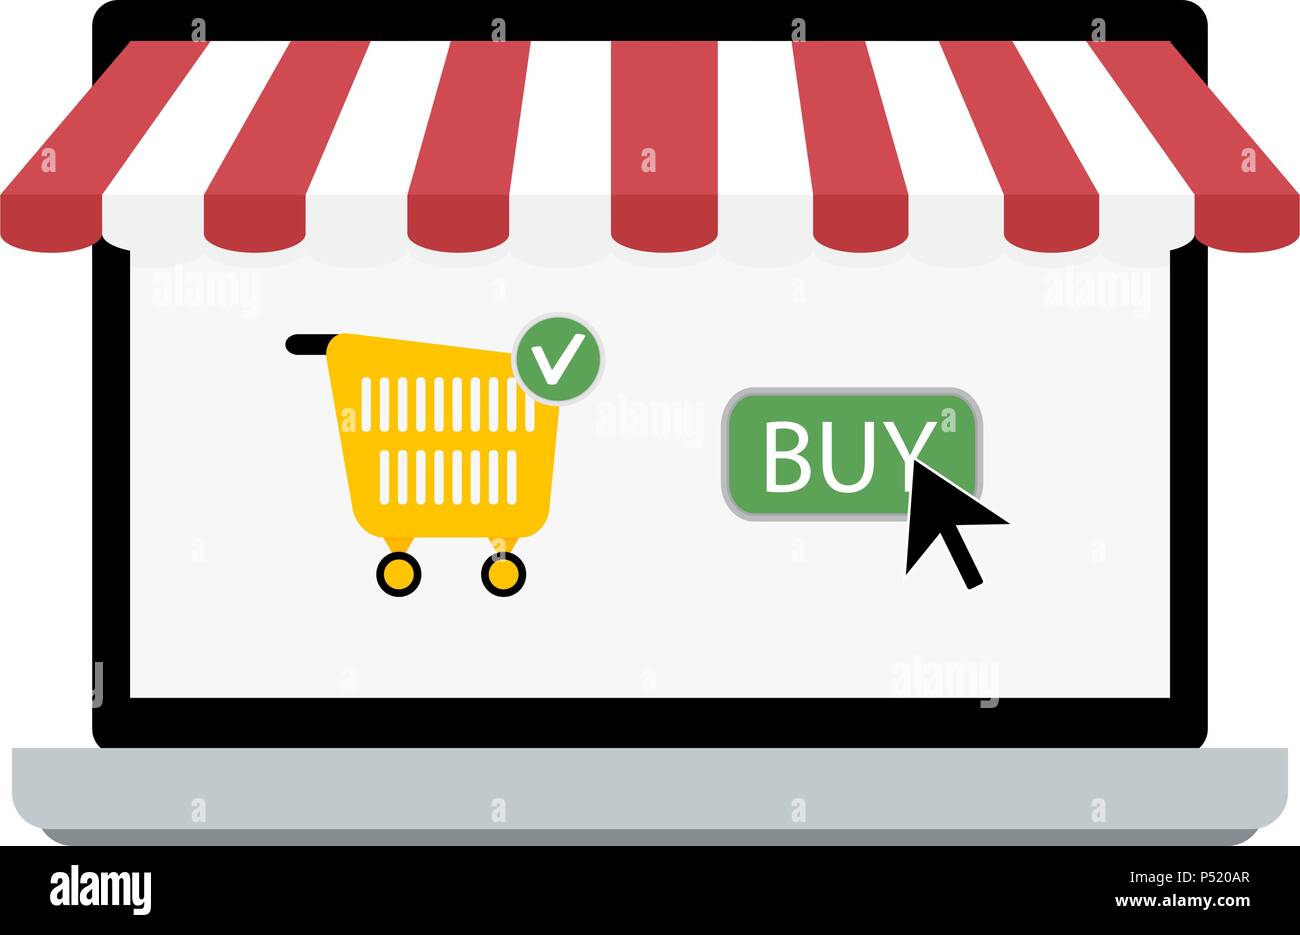 Online Store kaufen. E-Commerce und Bildschirm für Einkauf, Vektor, Abbildung Stock Vektor